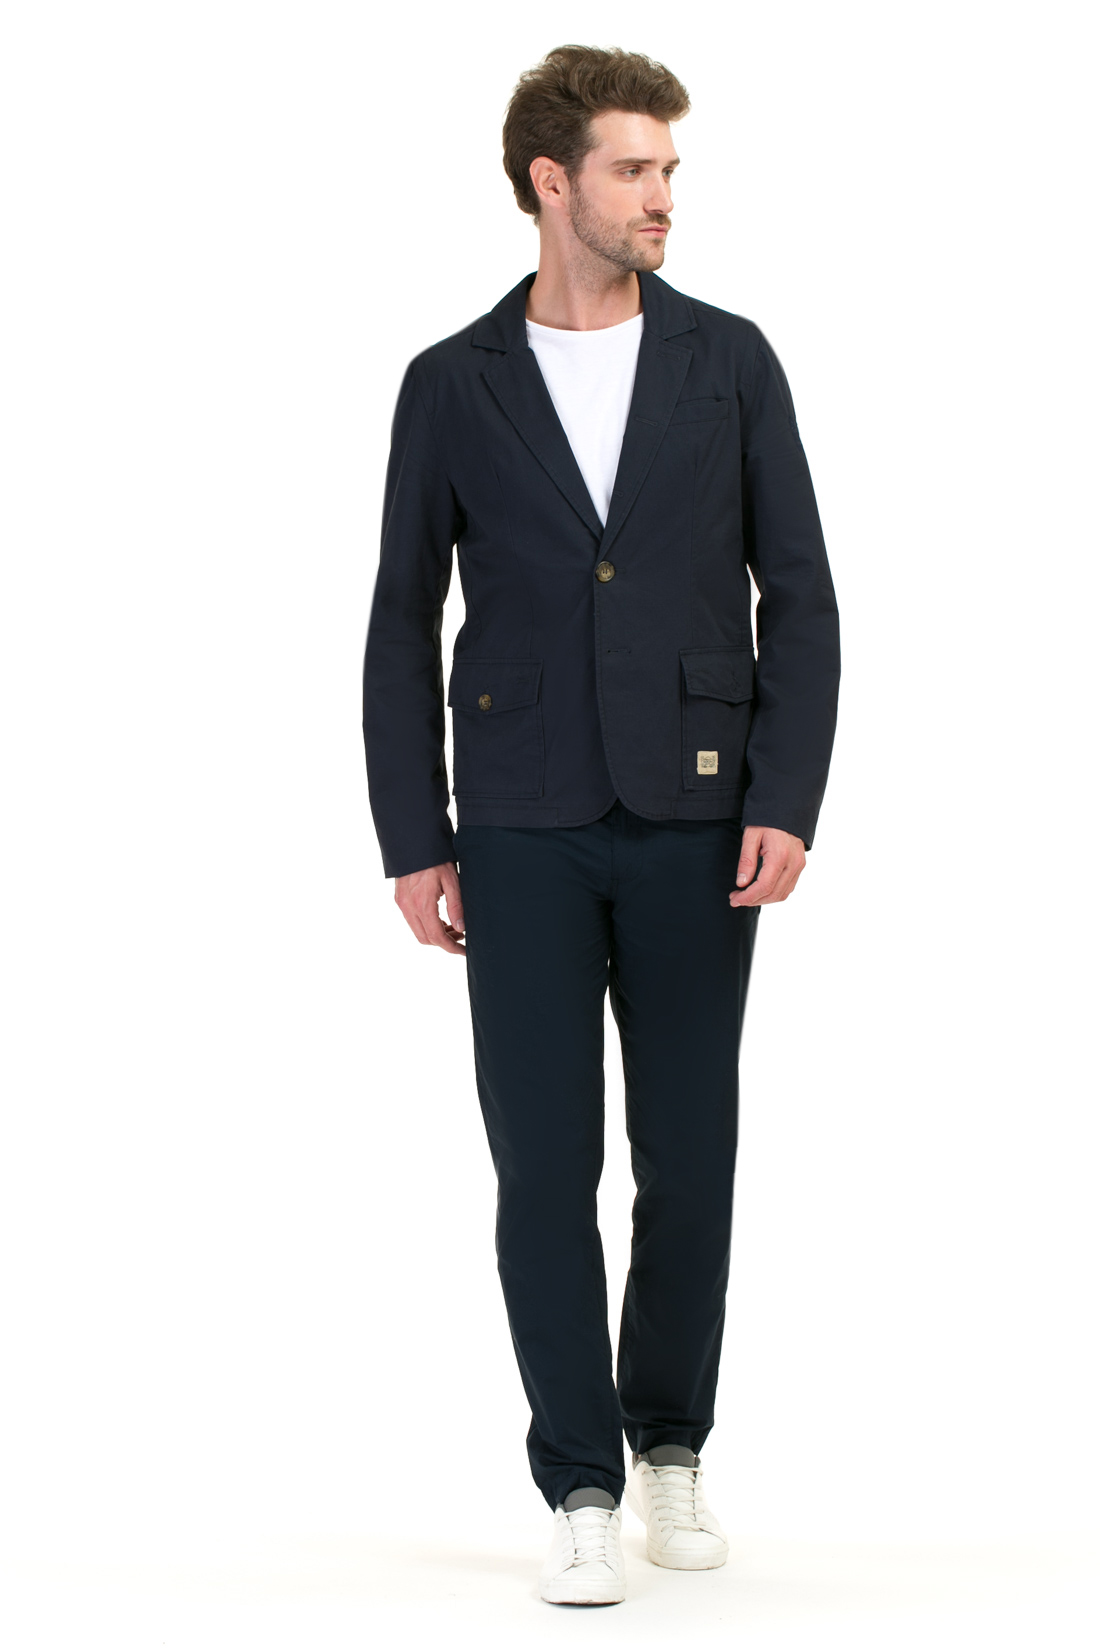 Повседневный пиджак (арт. baon B627004), размер M, цвет синий Повседневный пиджак (арт. baon B627004) - фото 5